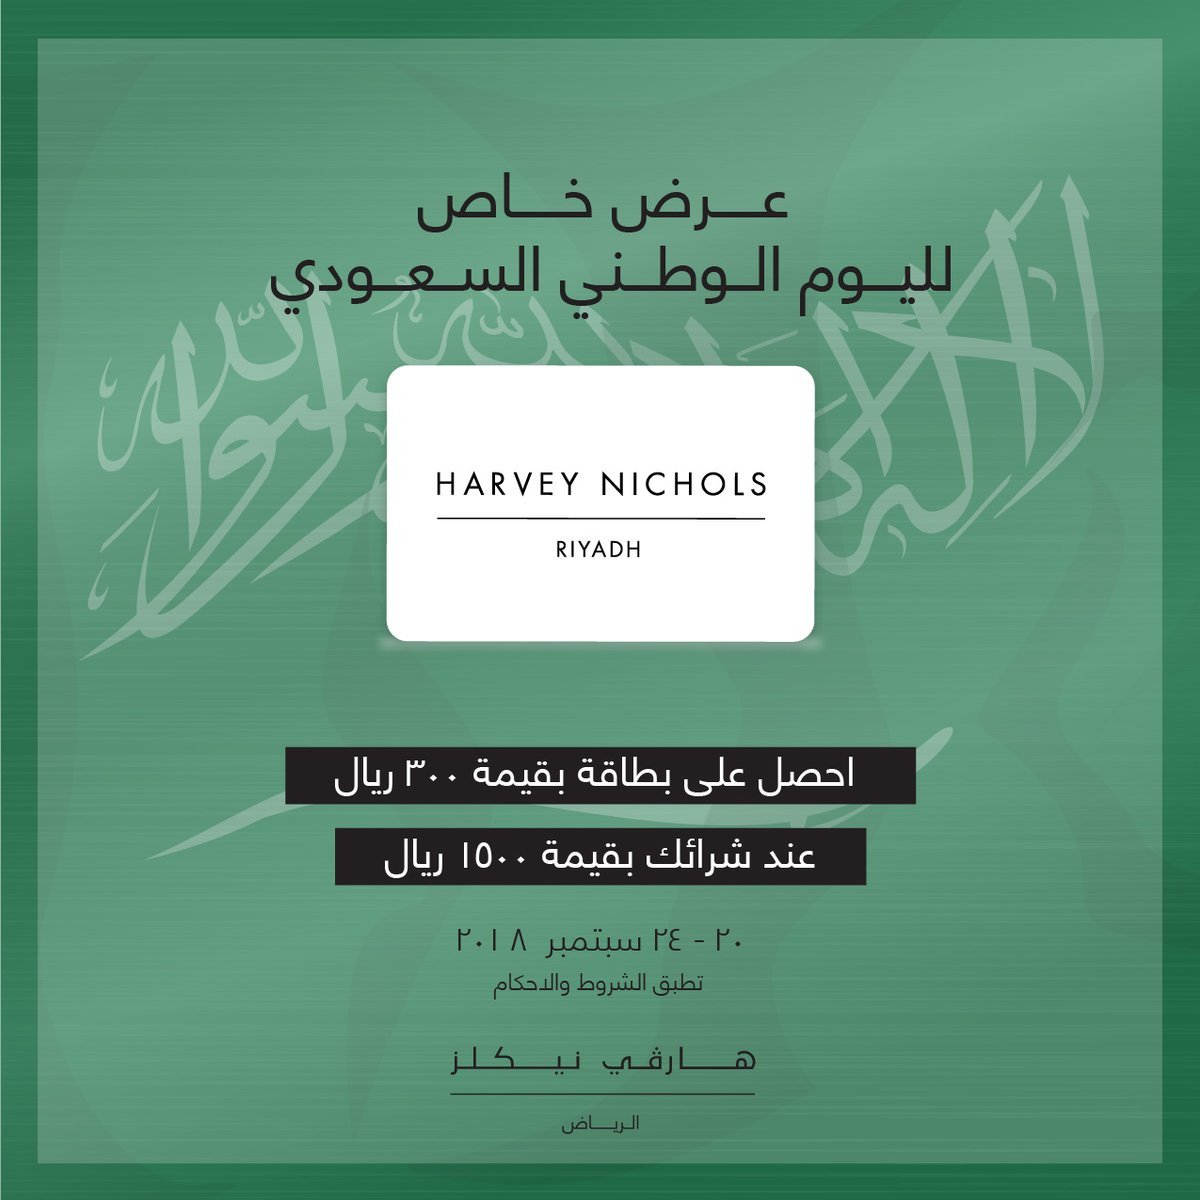 احتفالات اليوم الوطني السعودي هارفي نيكلز